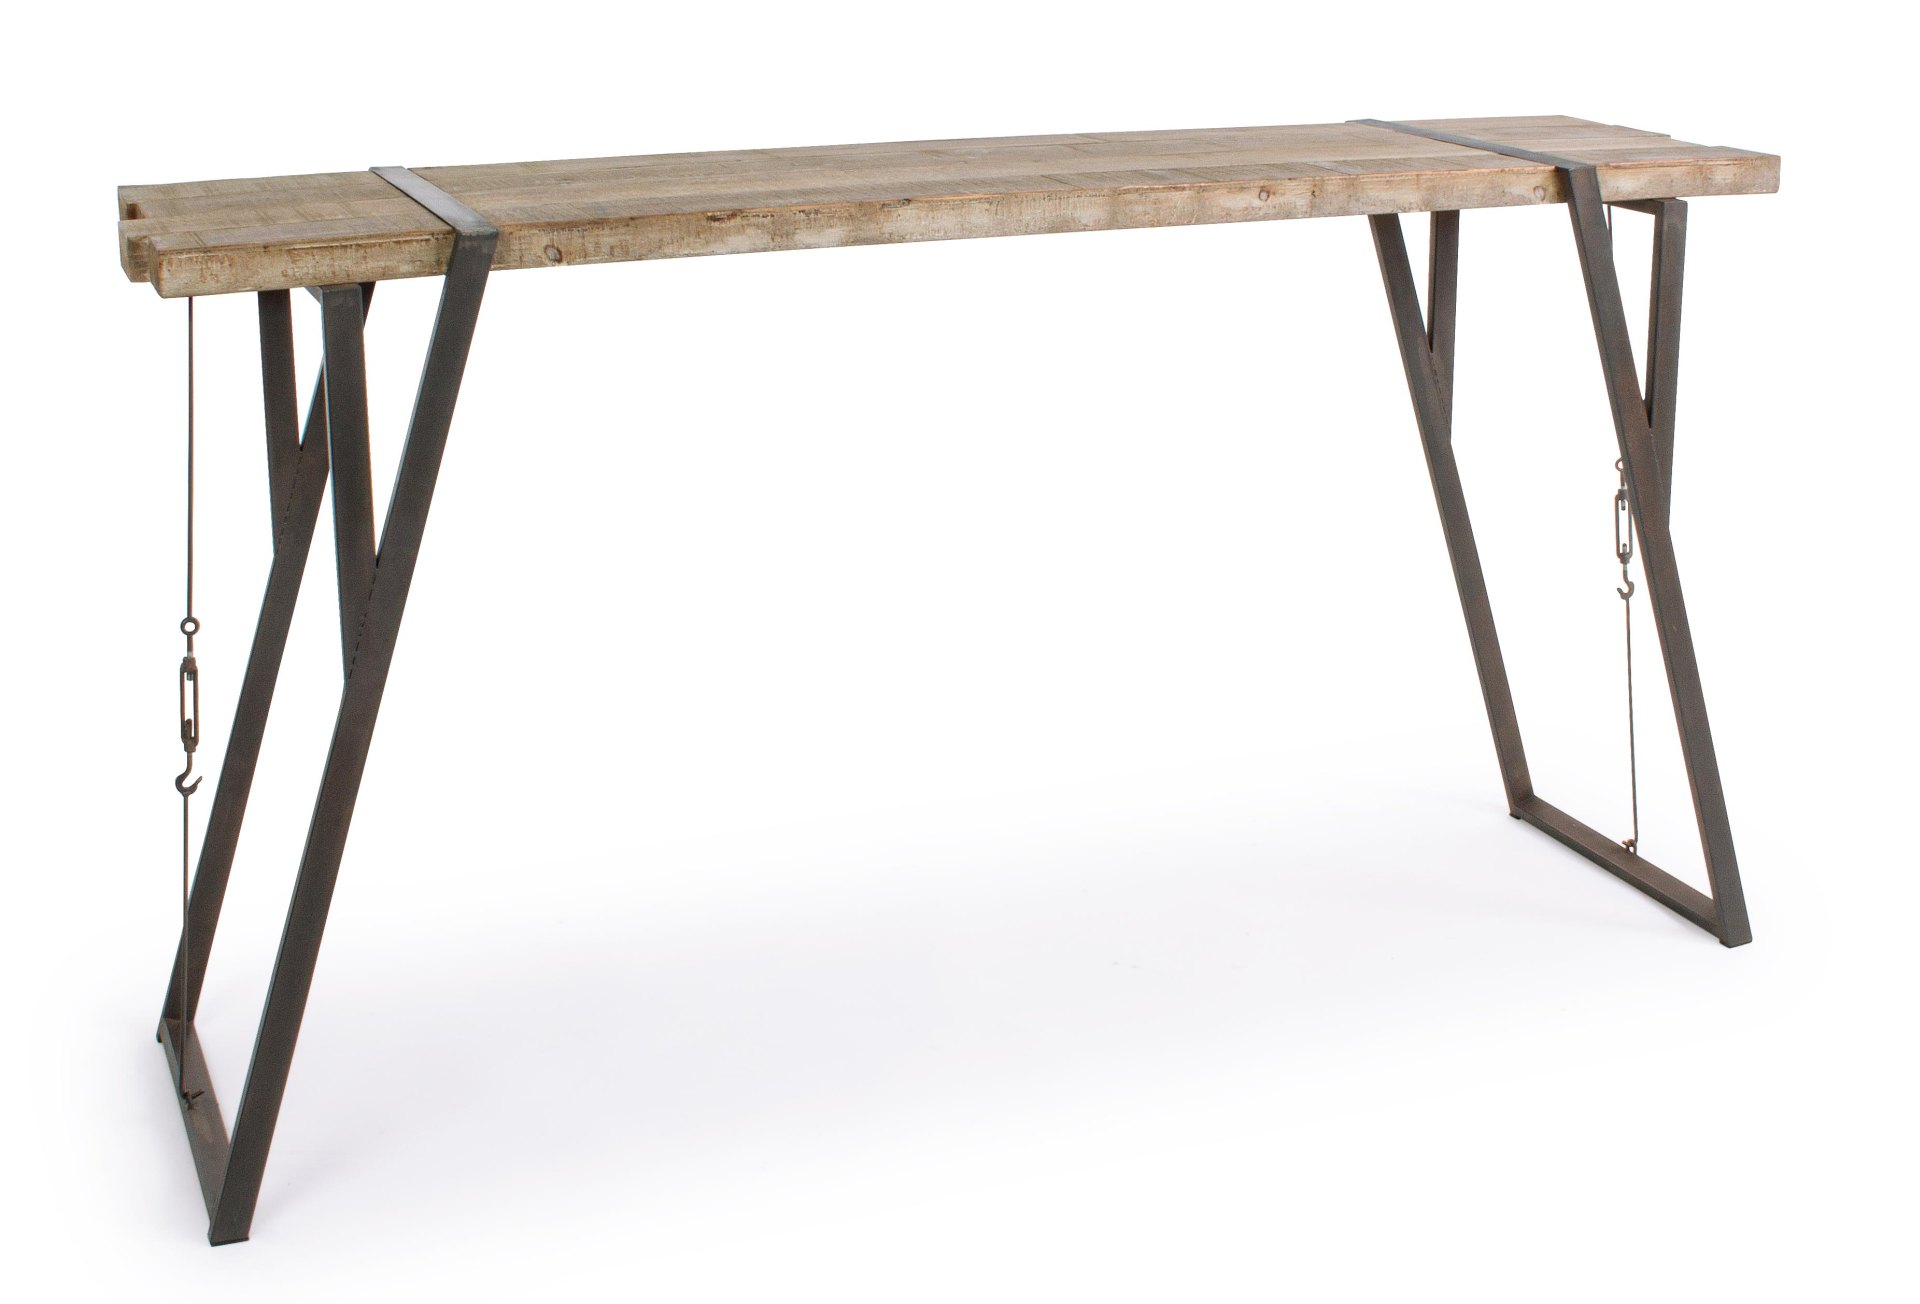 Der Bartisch Blocks überzeugt mit seinem moderndem Design. Gefertigt wurde er aus Fichtenholz, welches einen natürlichen Farbton besitzt. Das Gestell des Tisches ist aus Metall und ist in eine schwarze Farbe. Der Tisch besitzt eine Breite von 200 cm.